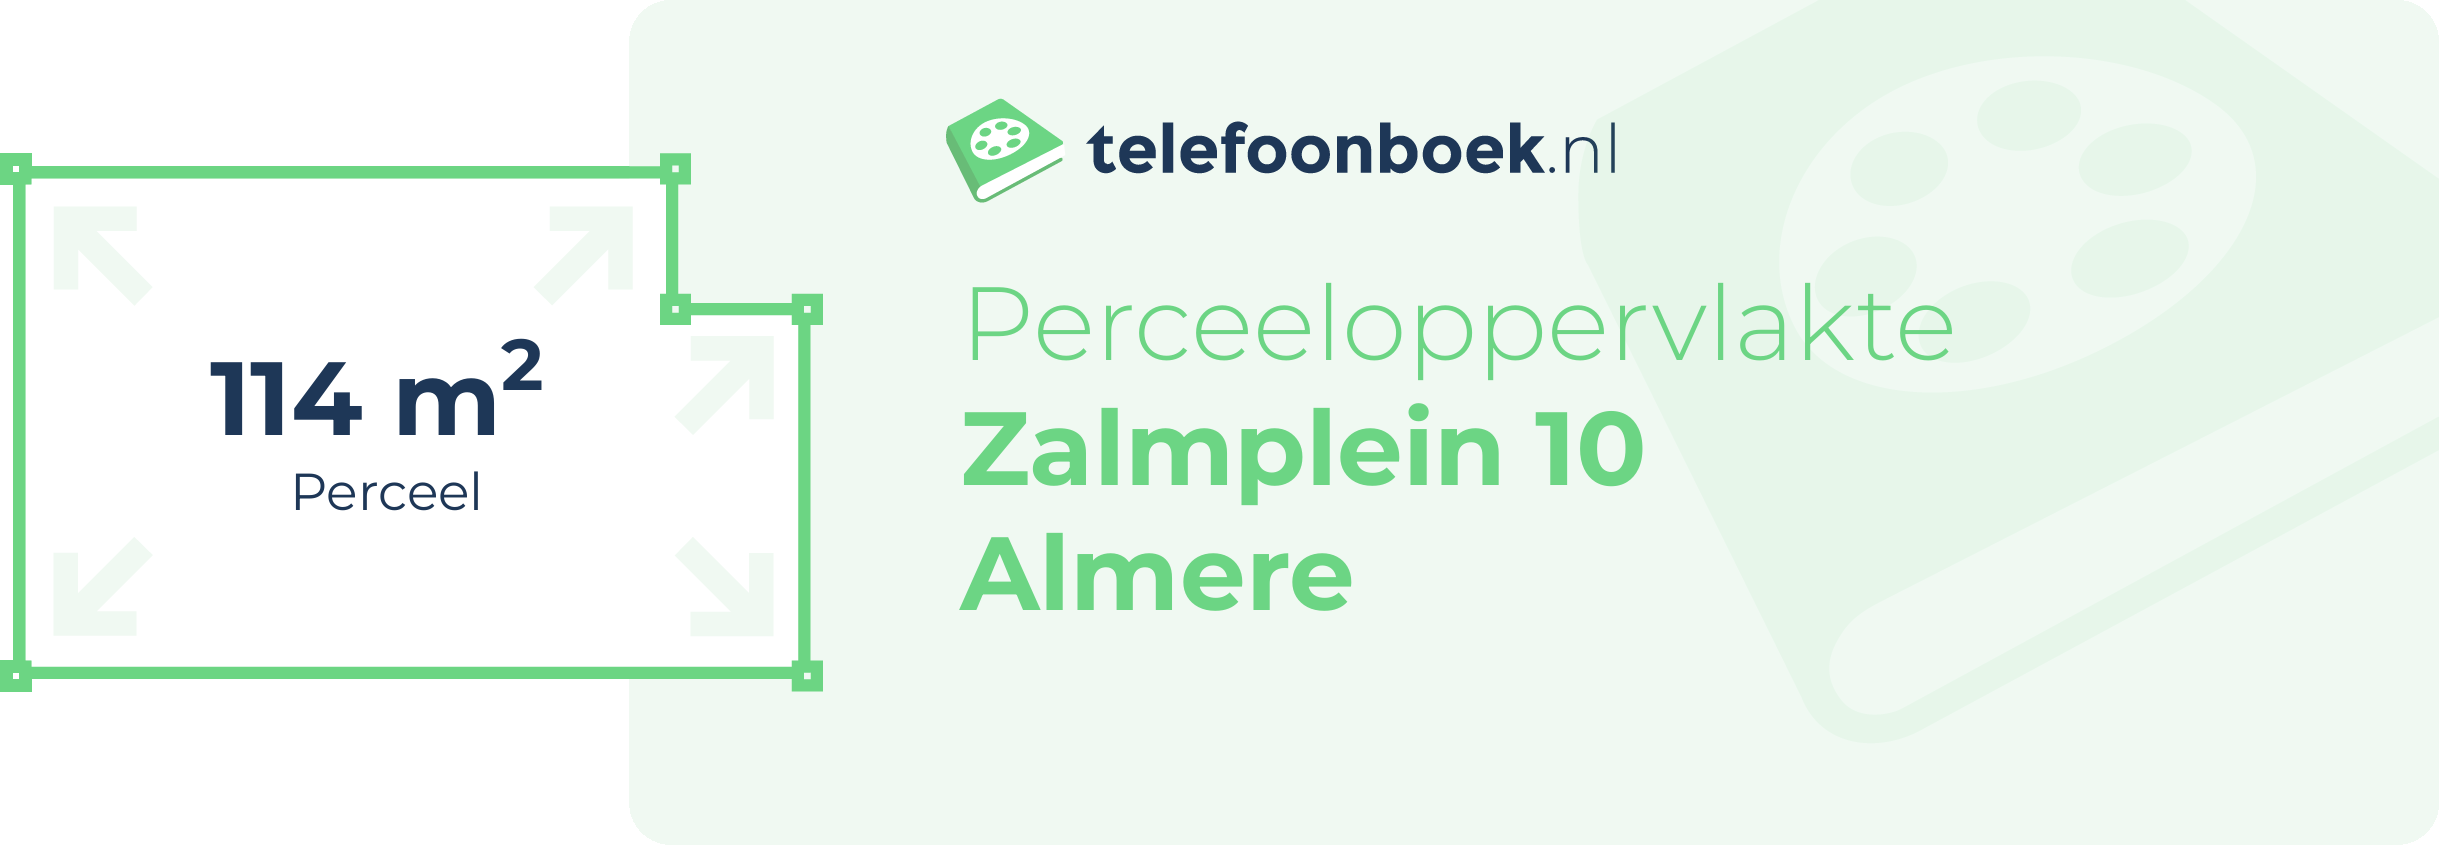 Perceeloppervlakte Zalmplein 10 Almere